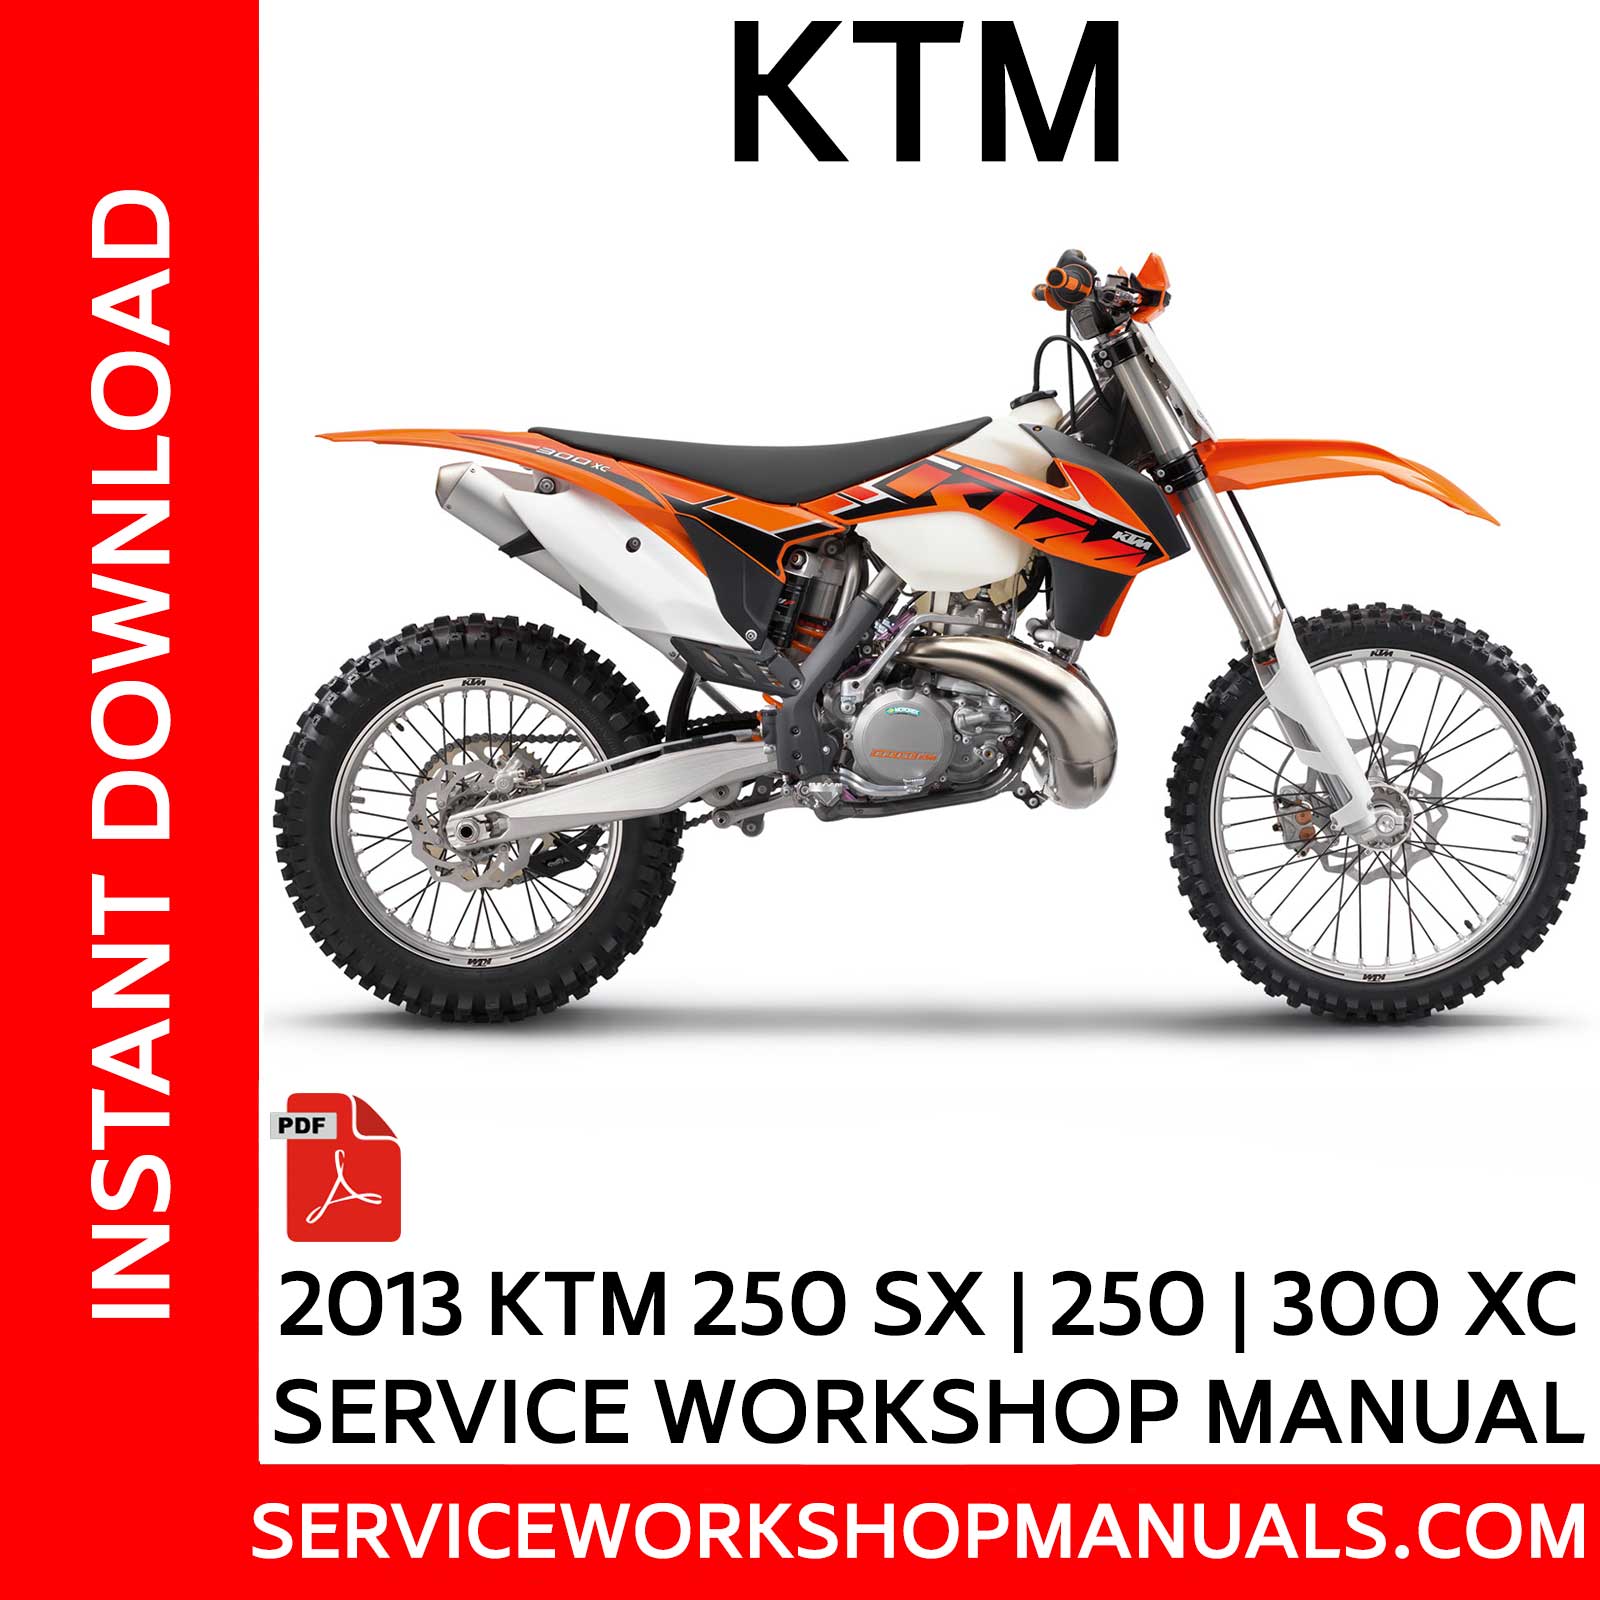 KTM 250 SX 250 300 XC 2014 Service Manual Service Manuals